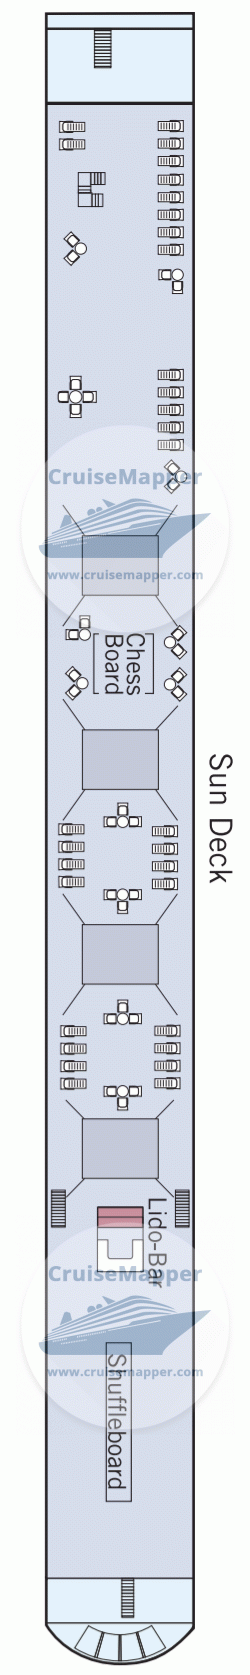 MS Amadeus Silver II Deck 04 - Sun